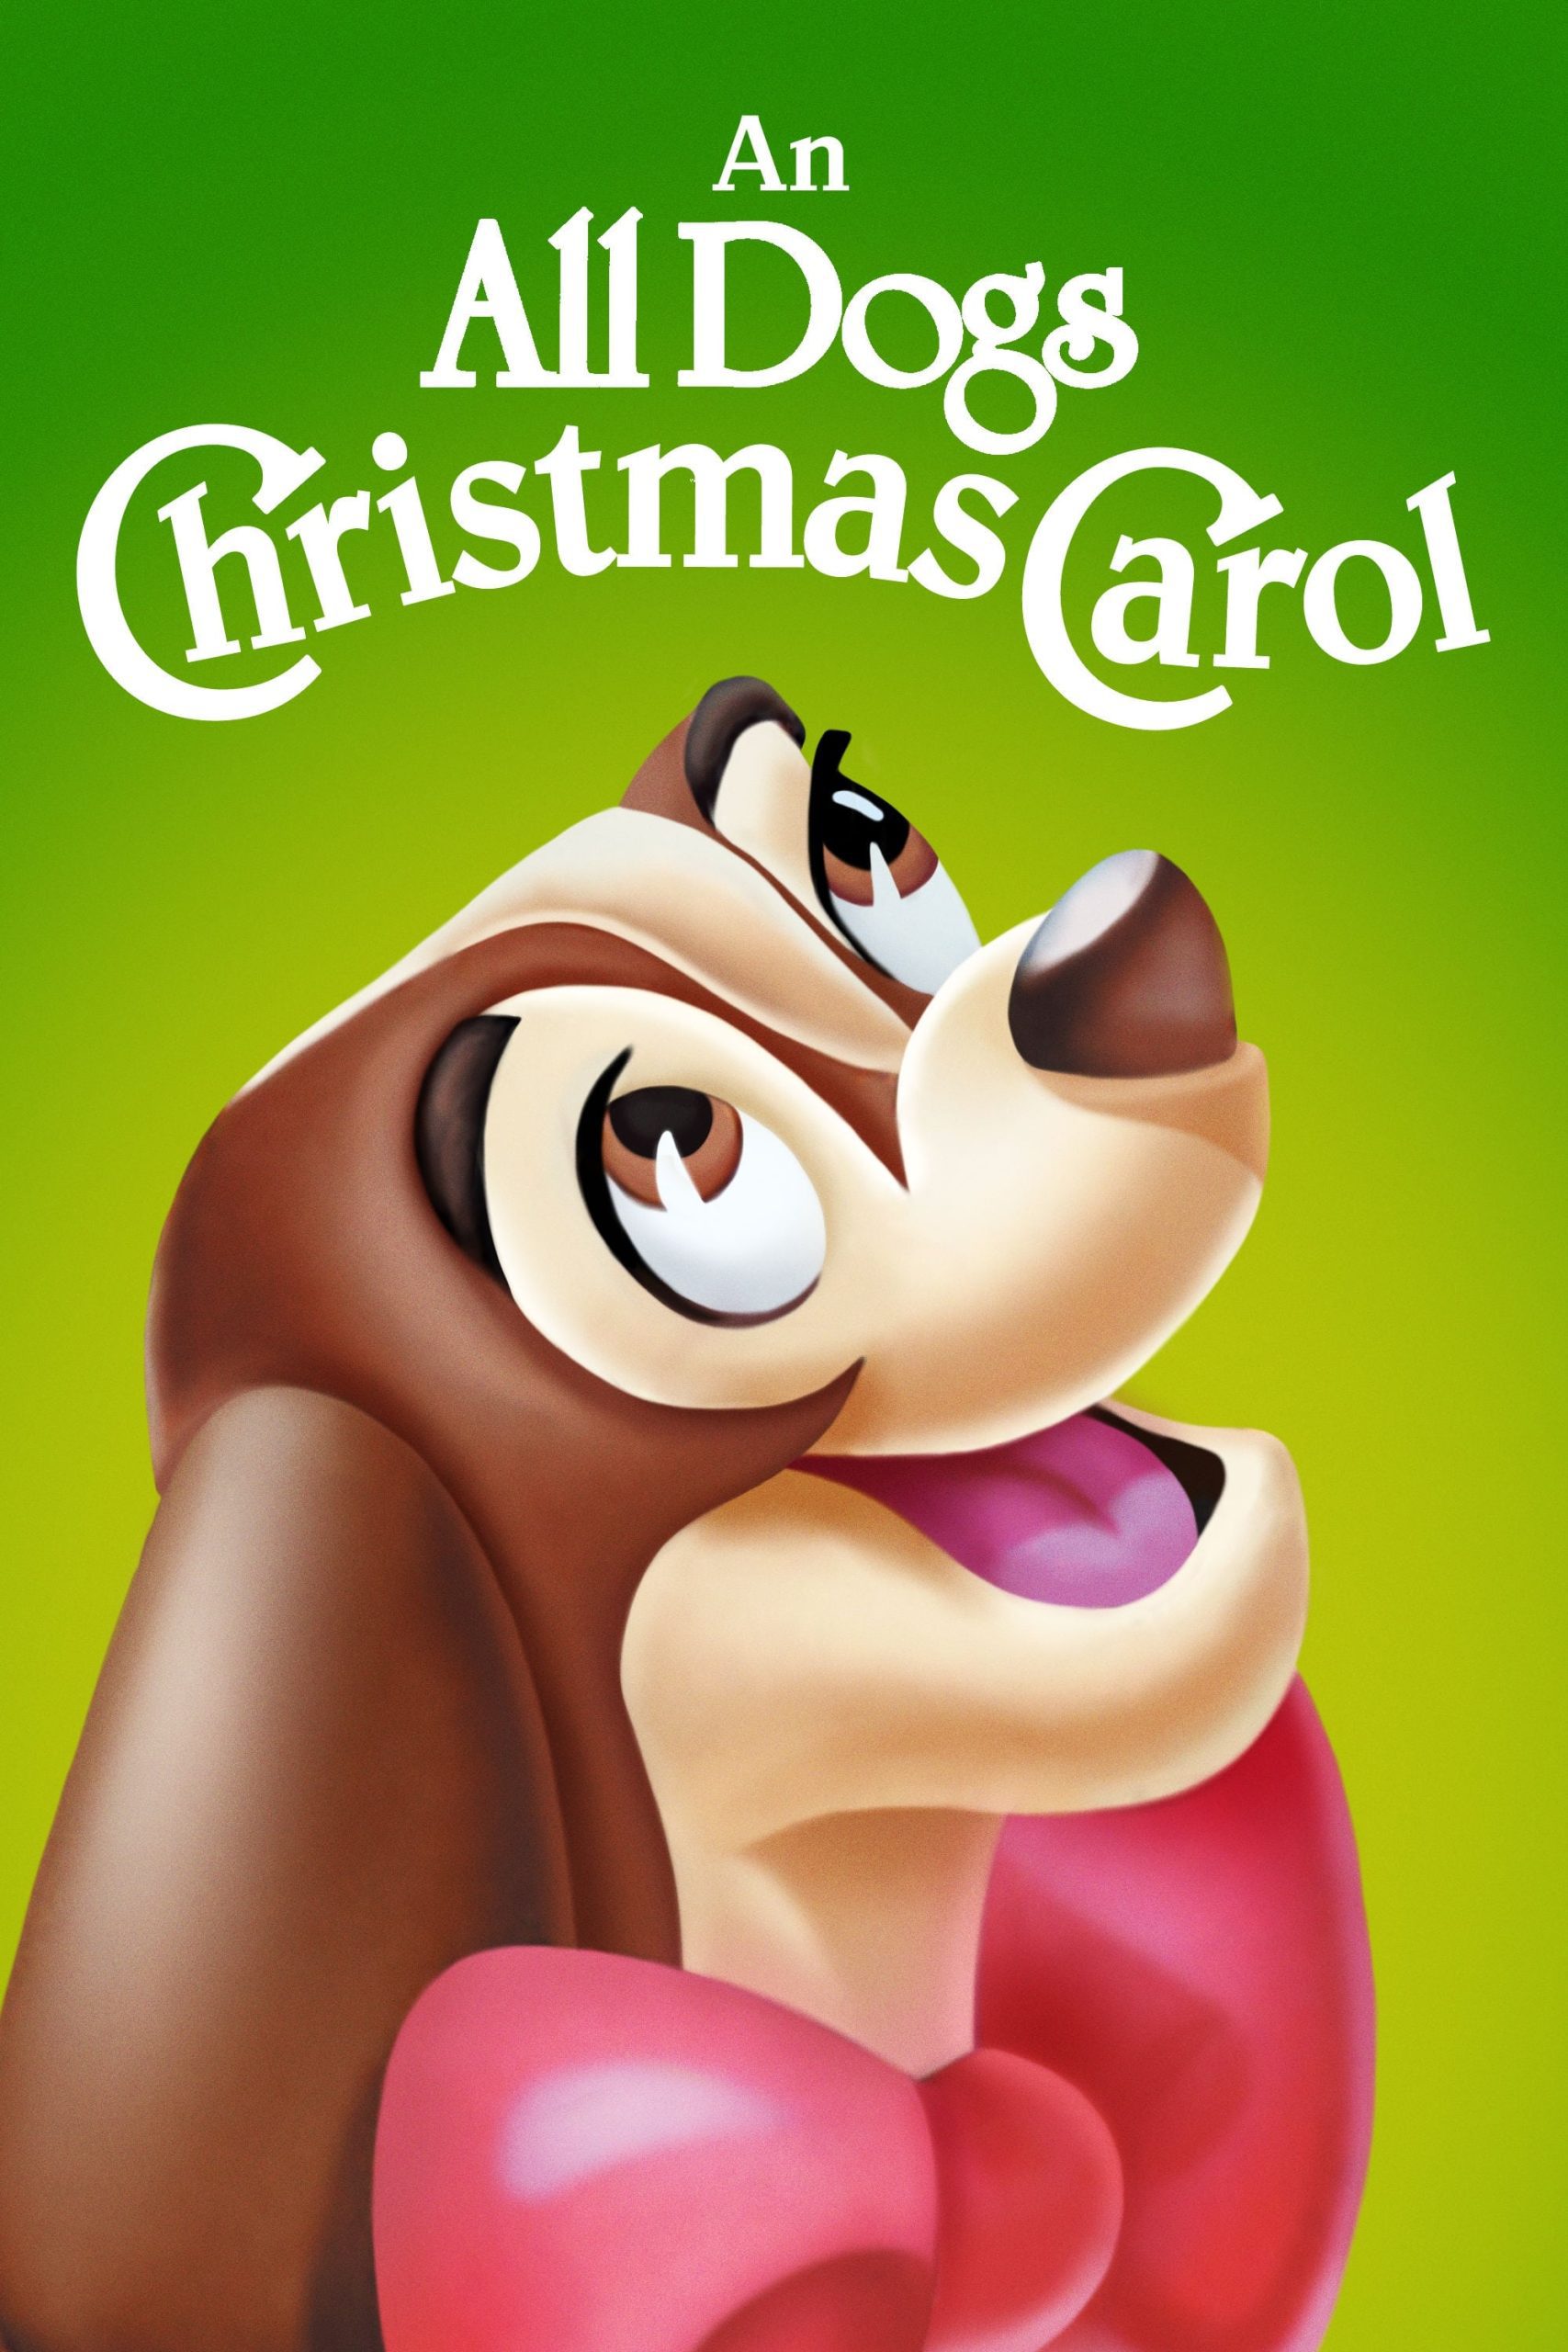 دانلود صوت دوبله فیلم An All Dogs Christmas Carol